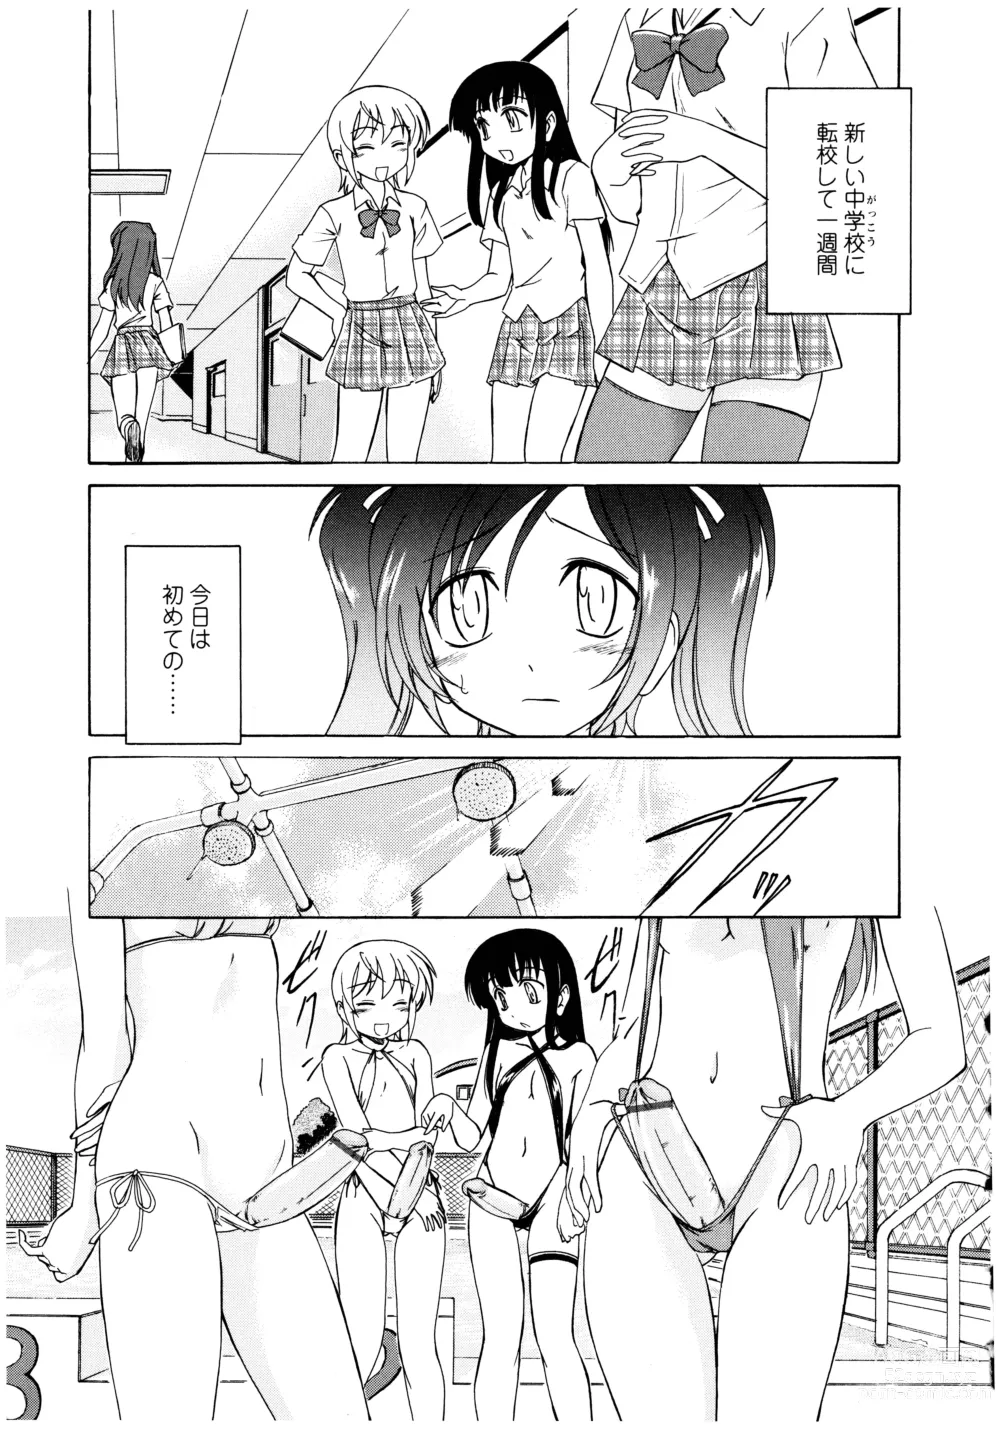 Page 7 of manga Futanari Yesterday